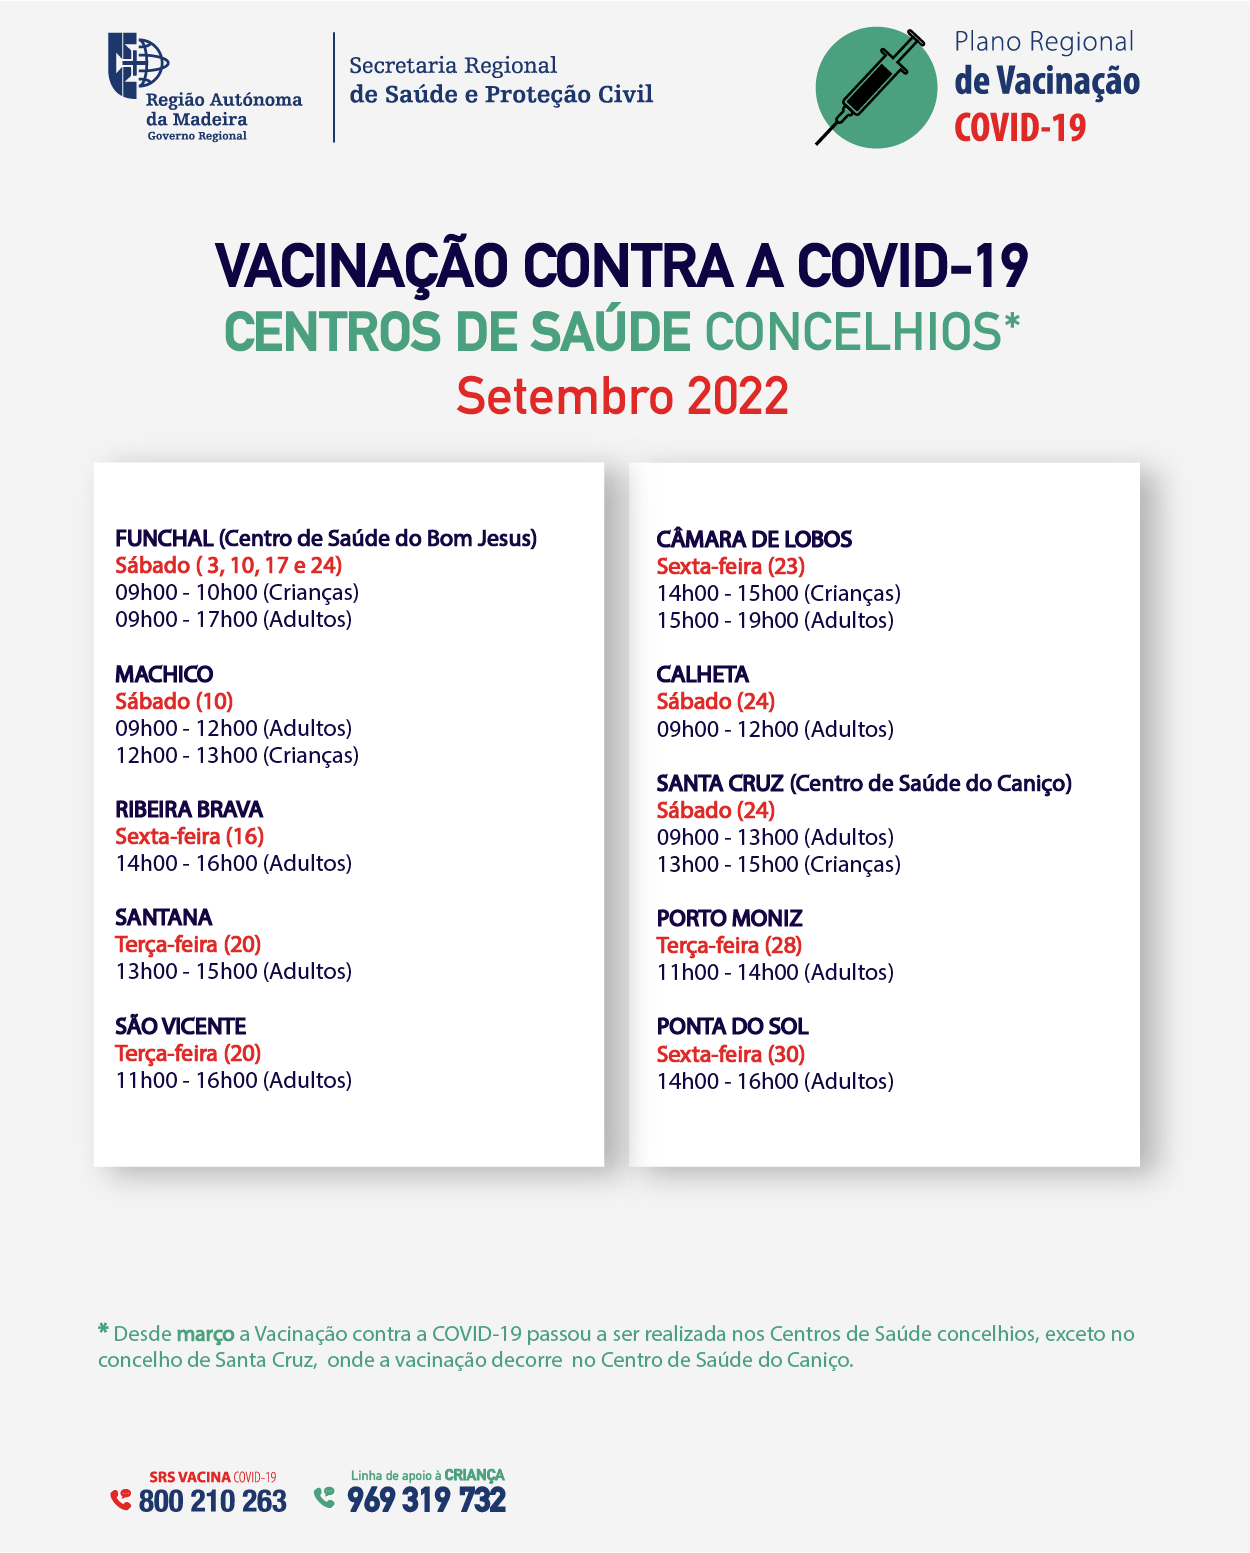 Calendário de Vacinação contra a COVID-19 nos Centros de Saúde: SETEMBRO